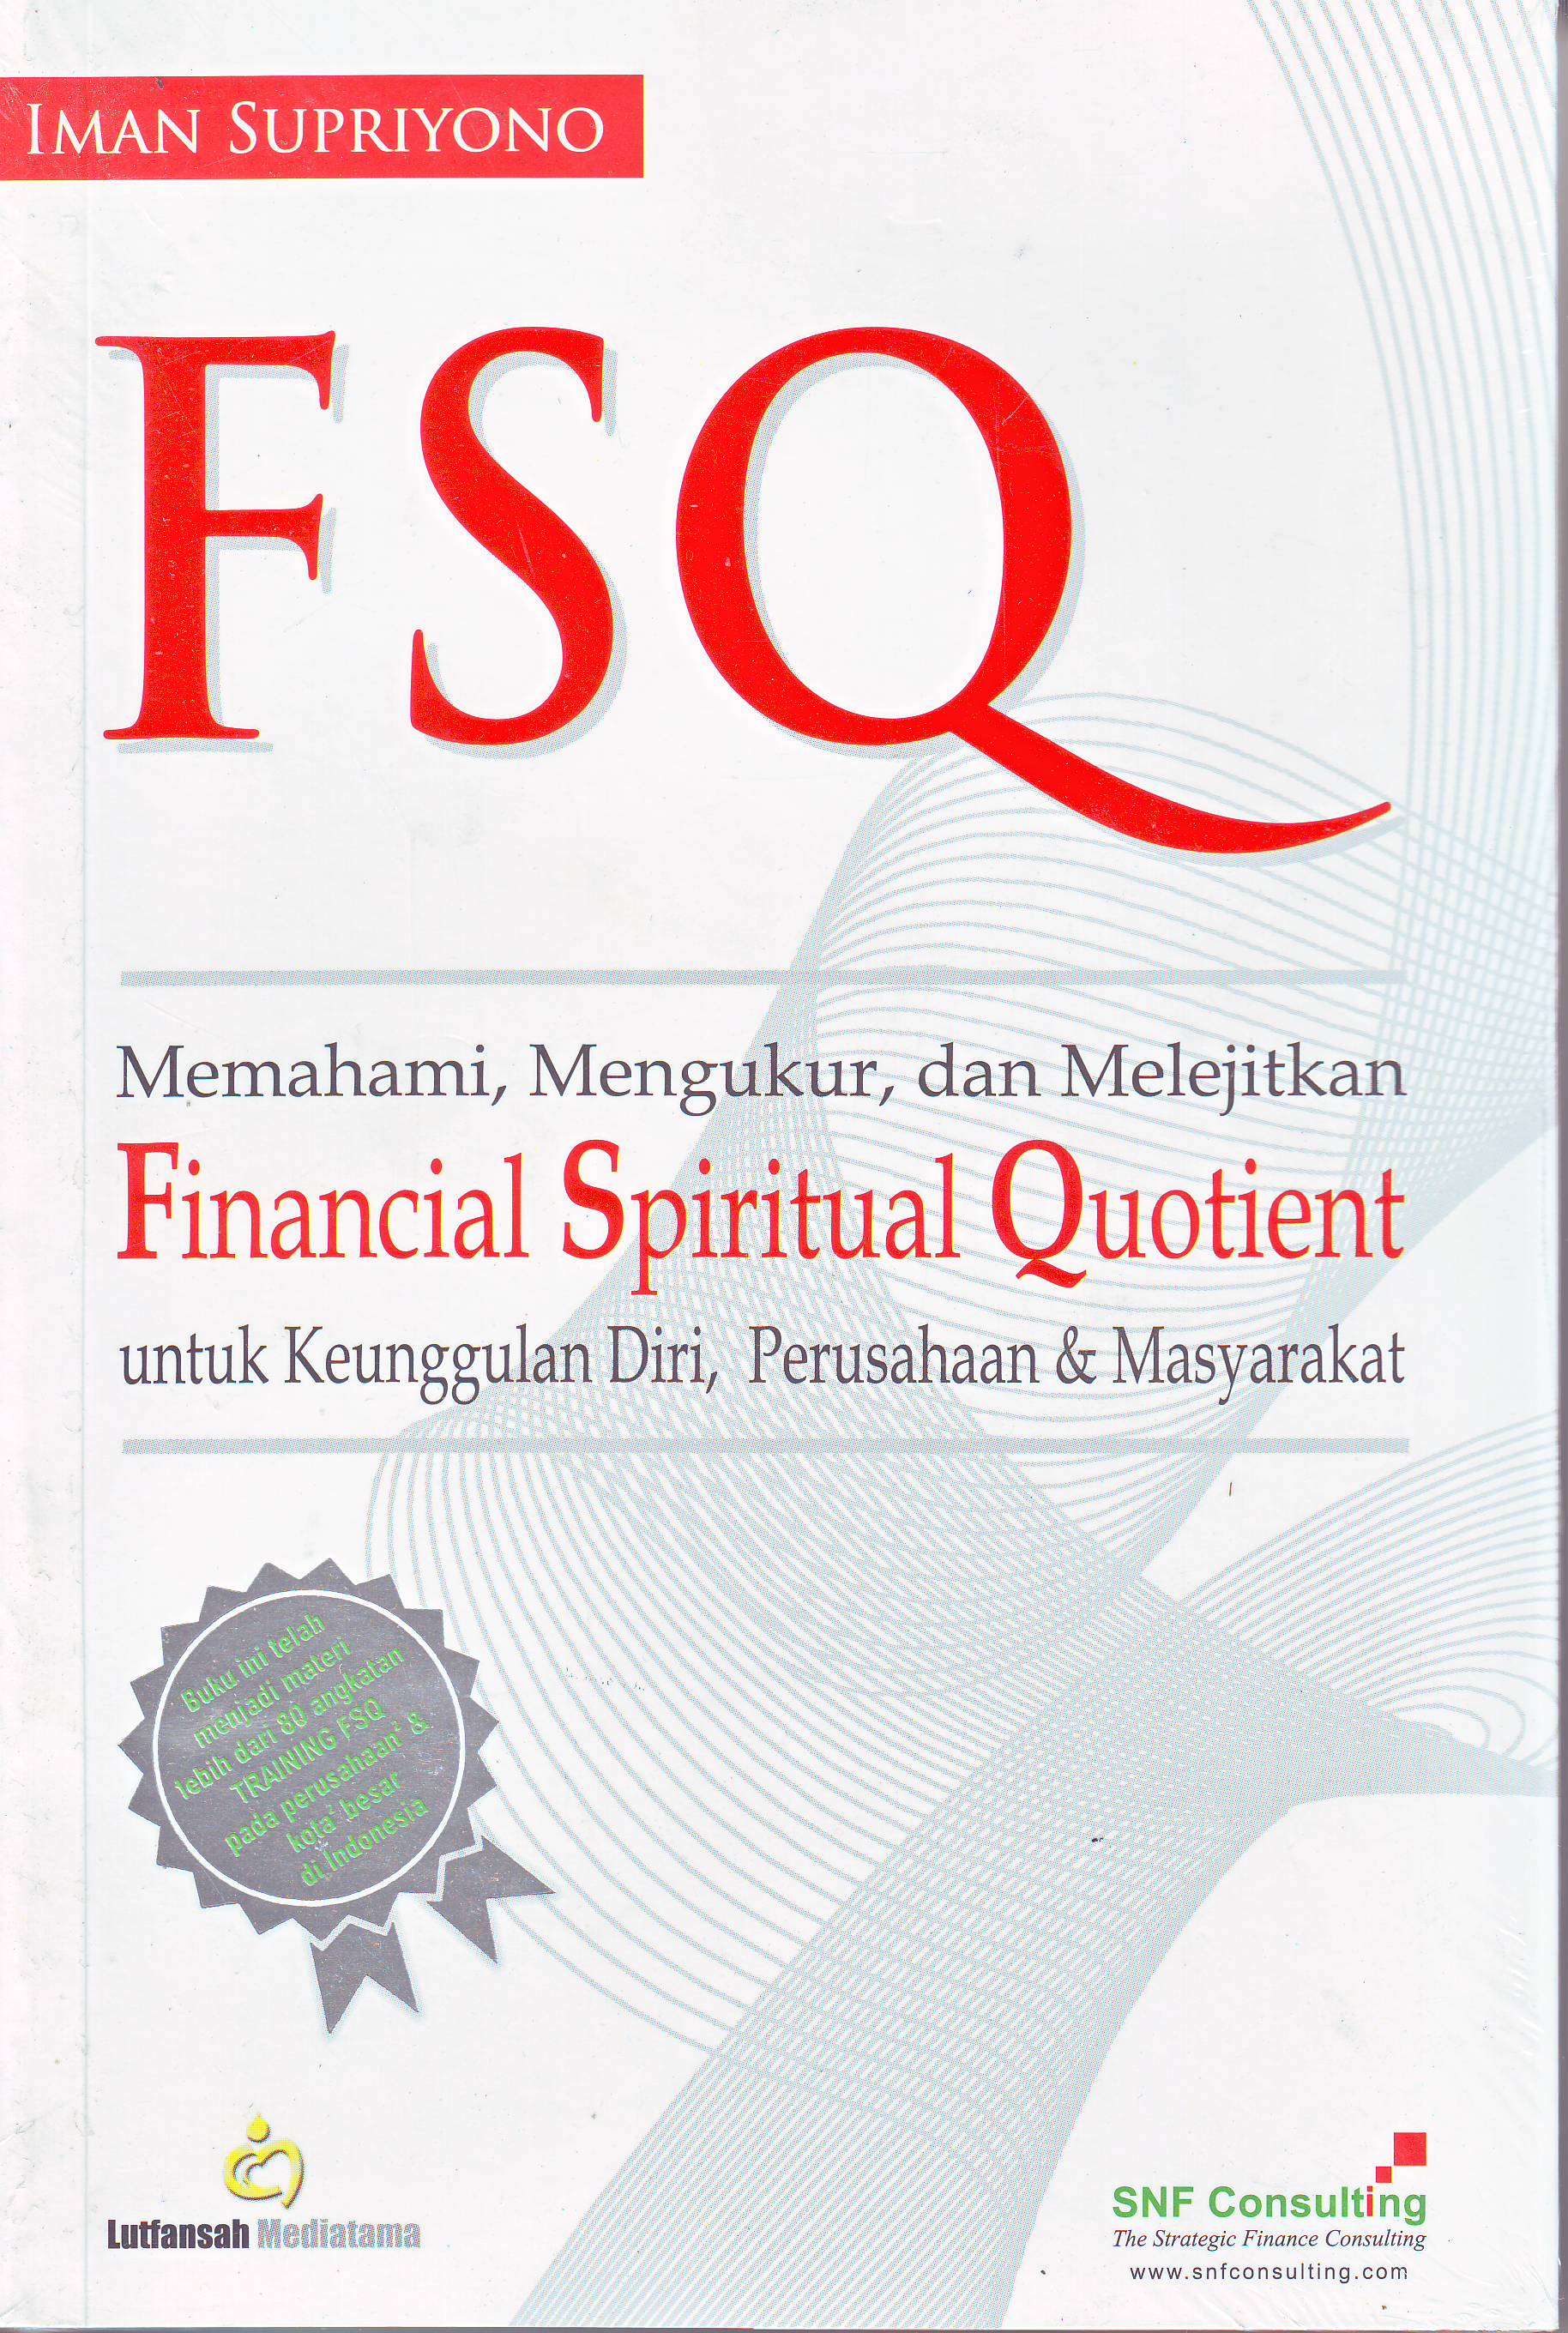 Buku FSQ dari SNF Consulting sebagai materi dasar pembelajaran kursus ini